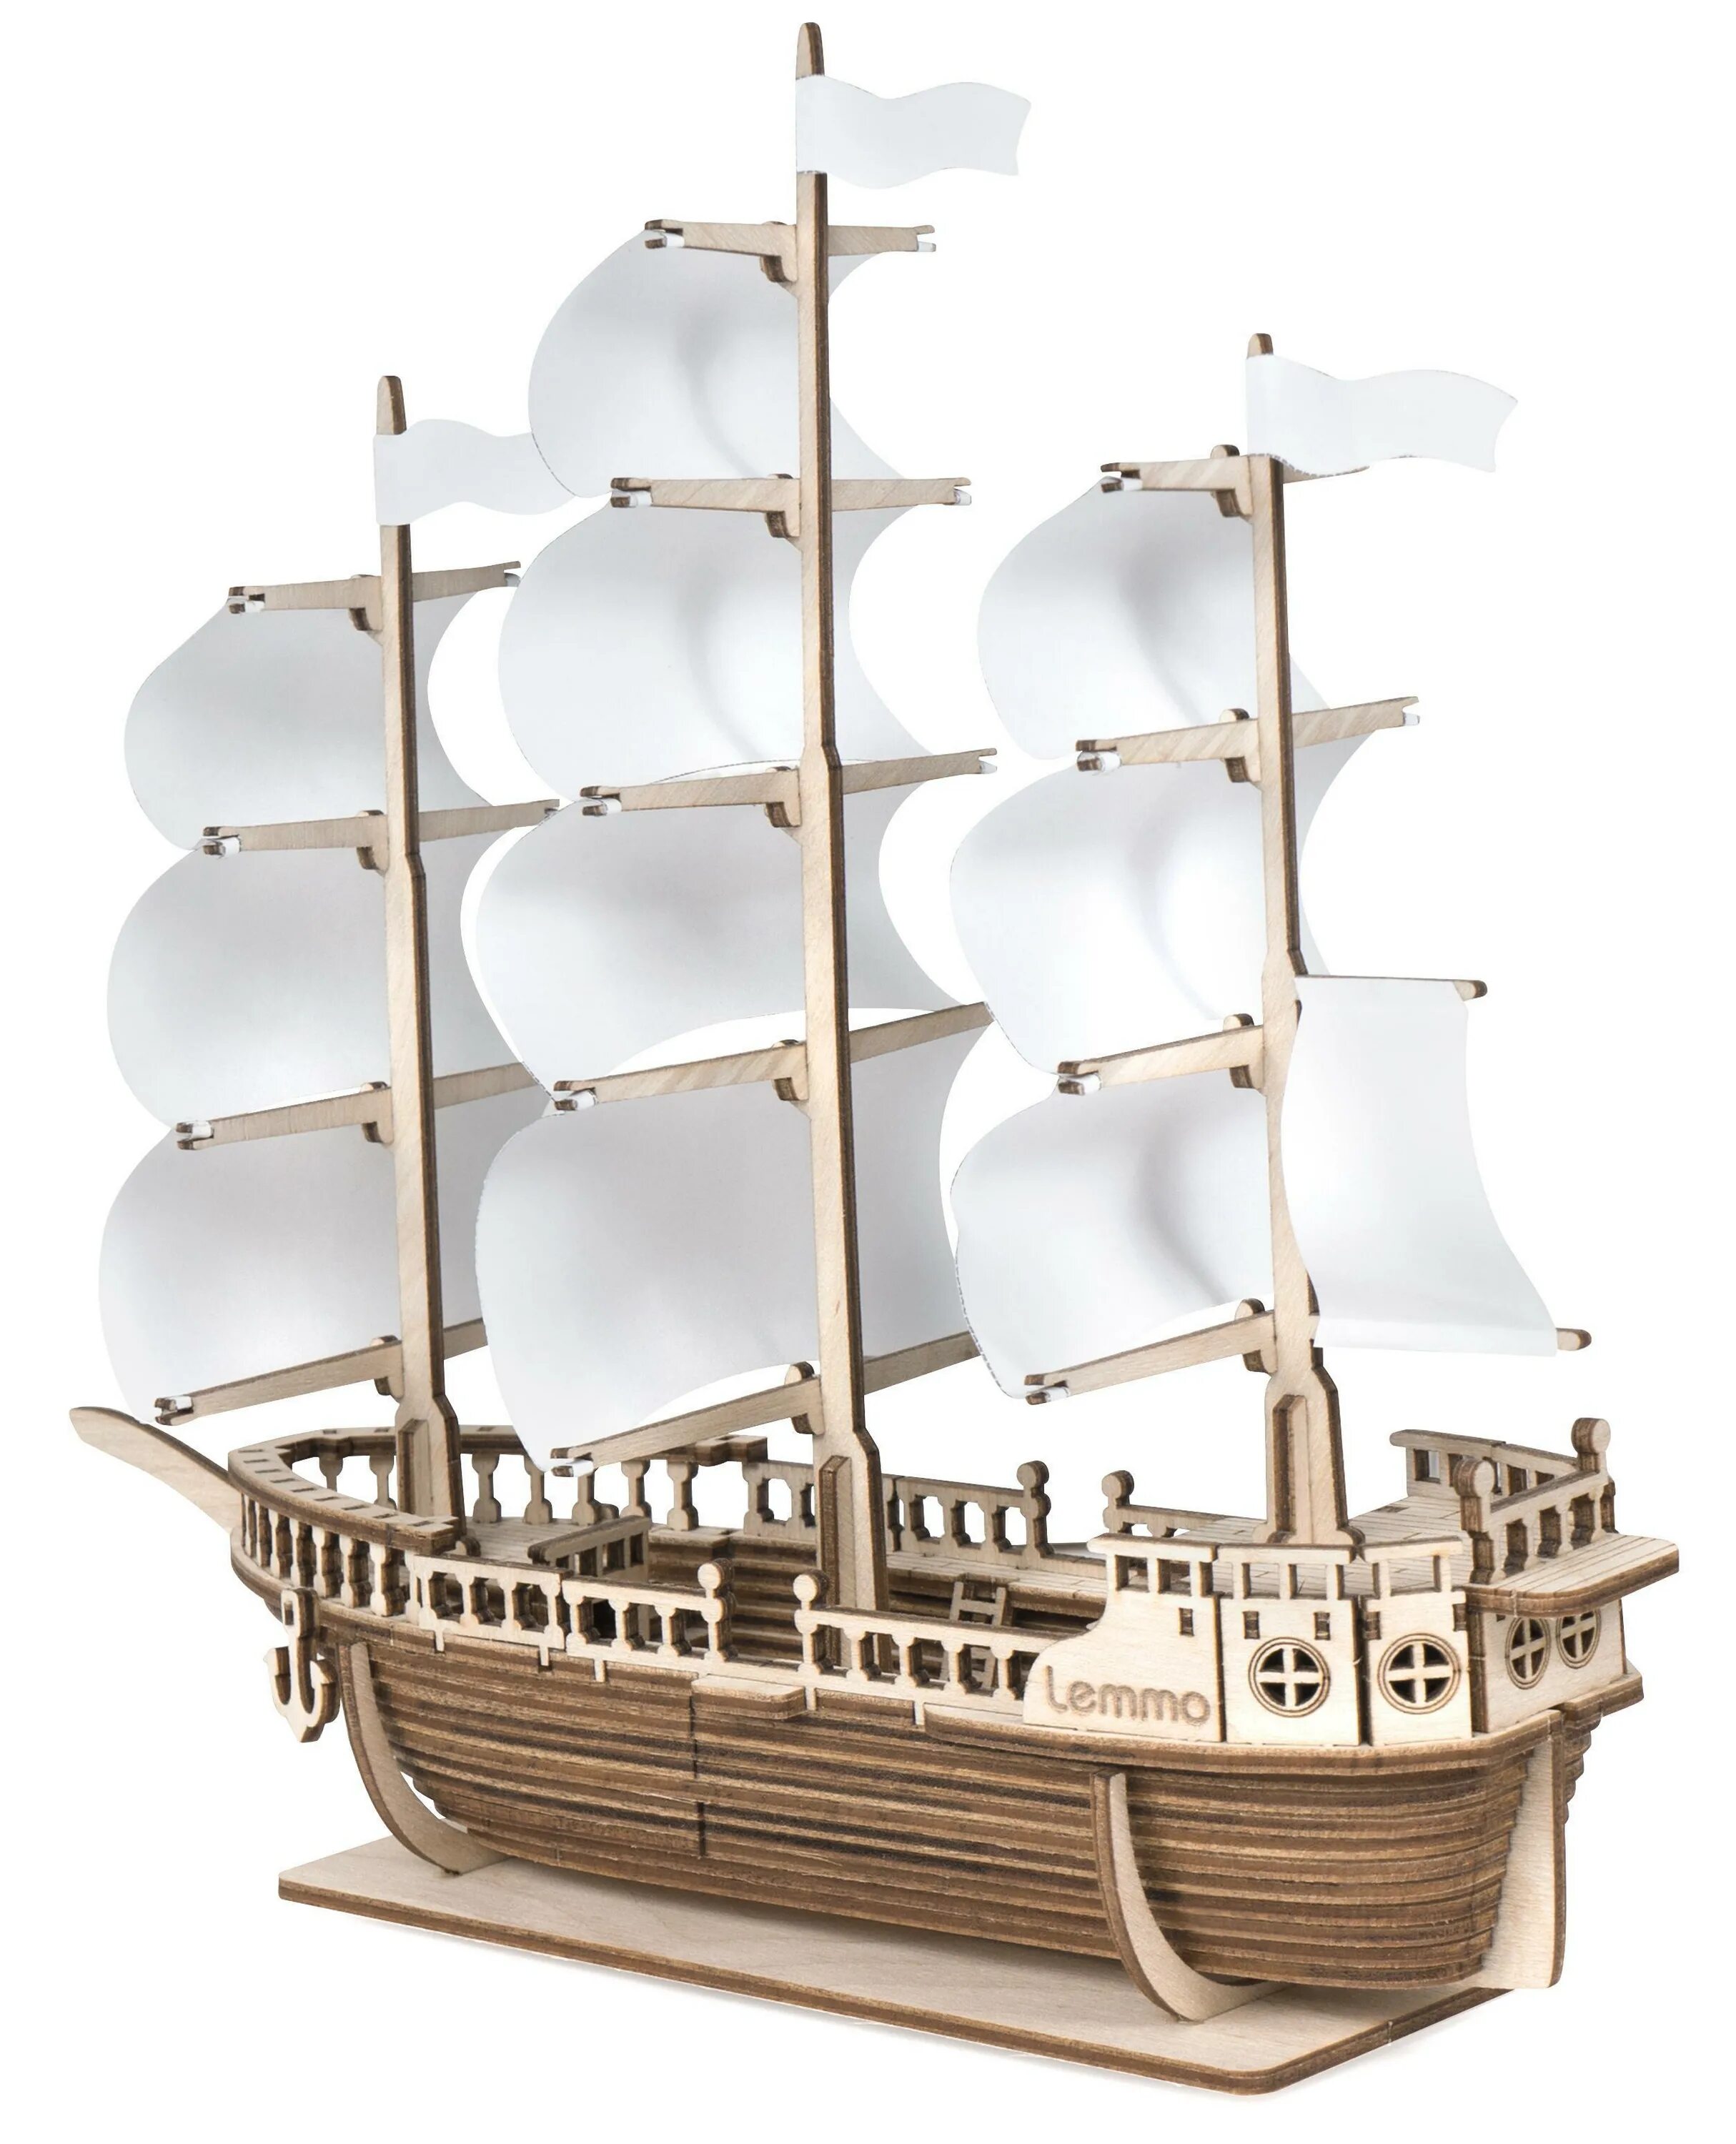 Корабль Ламар Lemmo. Сборная модель из дерева Lemmo корабль "Ламар". Сборная модель Lemmo корабль Ламар 0145. Lemmo корабль Ламар 01-45. Сборный корабль из дерева купить